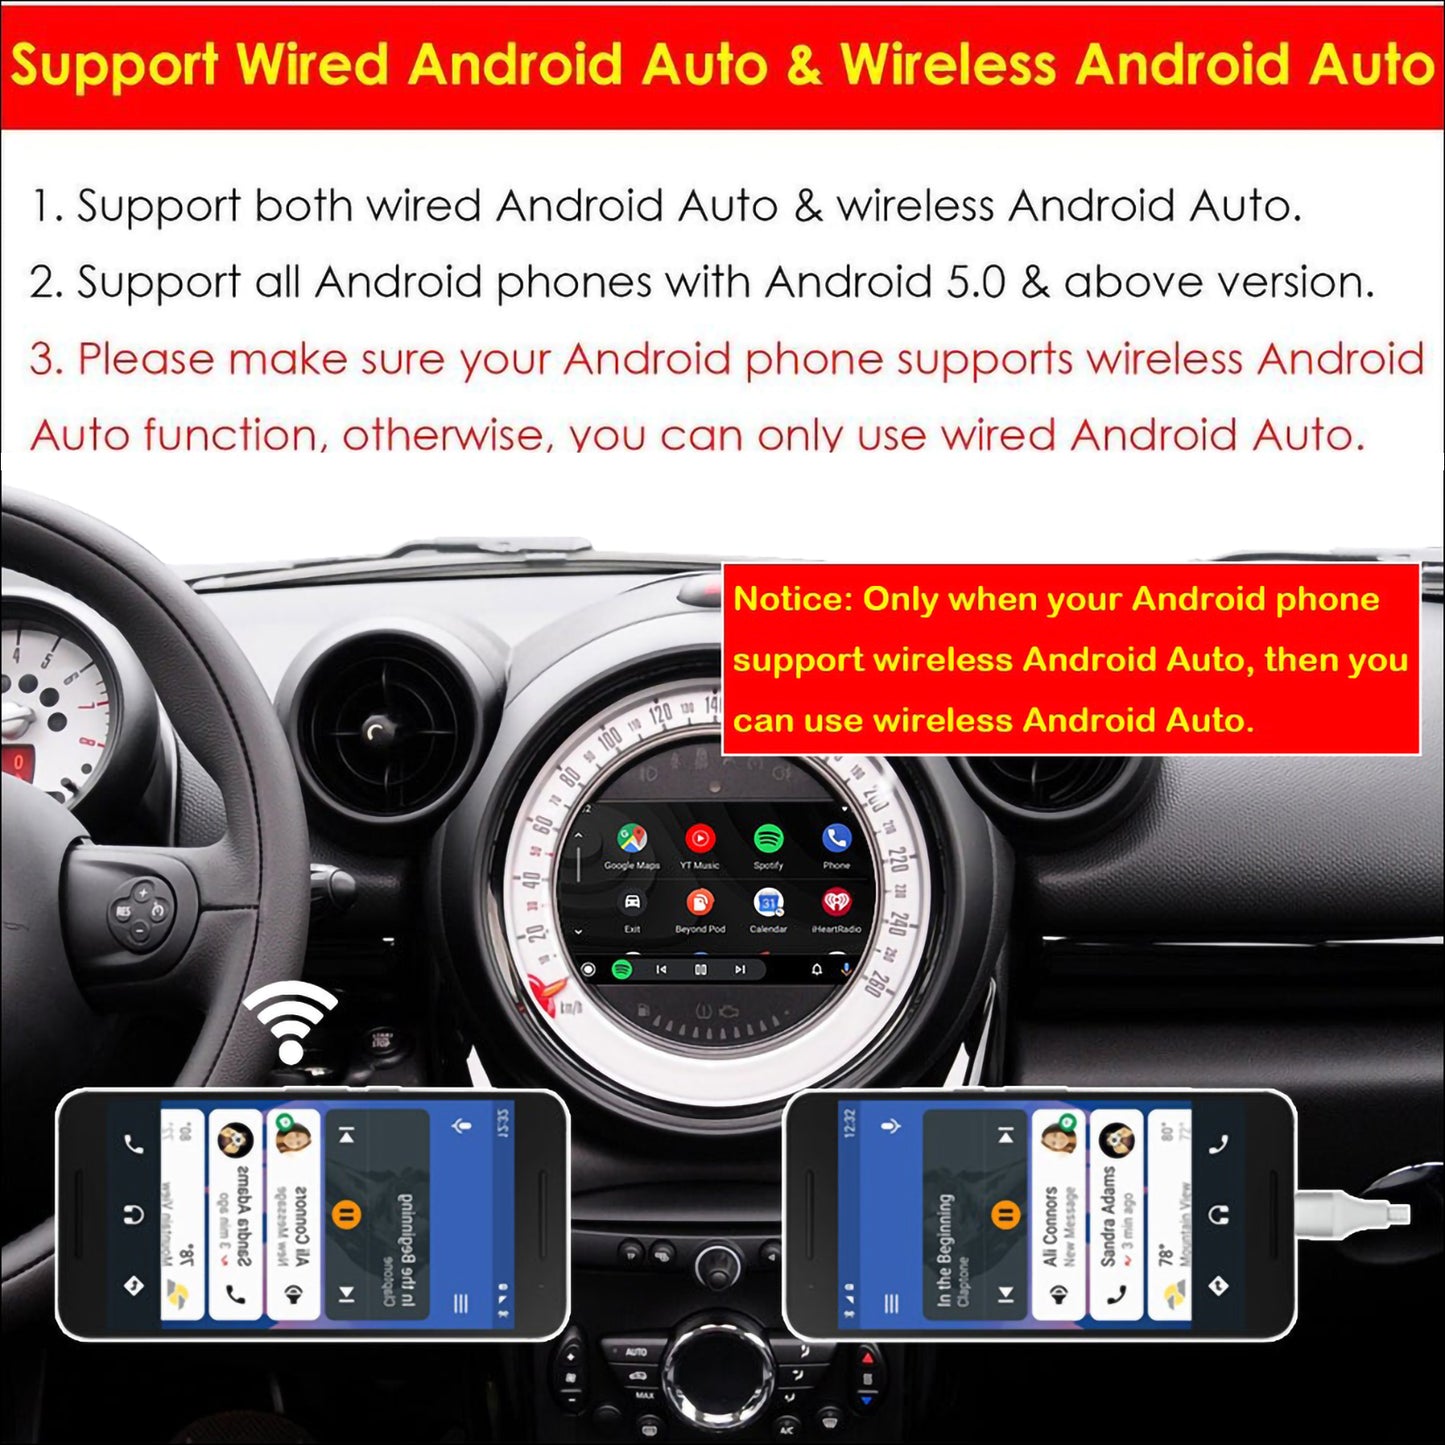 CarProKit Wireless CarPlay Android Auto AirPlay USB Mirroring Nachrüstsatz für Mini Cooper F54 F55 F56 F57 R58 R59 R60 R61 mit CIC-System 2010–2017 